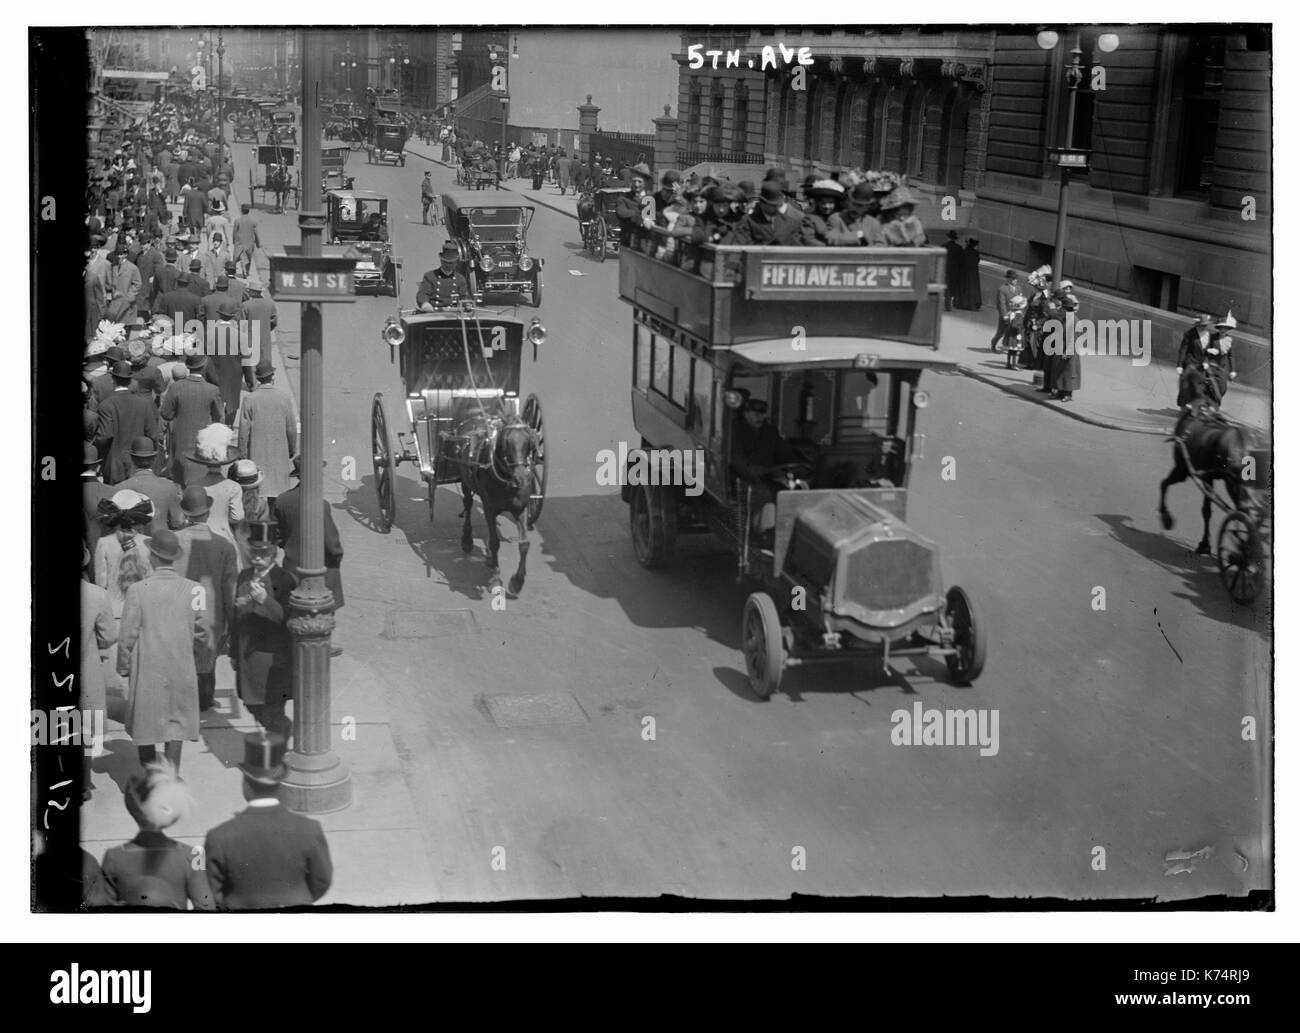 Vista, guardando a Nord, dell'angolo di West 51st Street e la Fifth Avenue, che mostra strade affollate con pedoni e il traffico automobilistico, New York City, circa 1915. Carrozze trainate da cavalli e le auto condividono la strada. Foto Stock